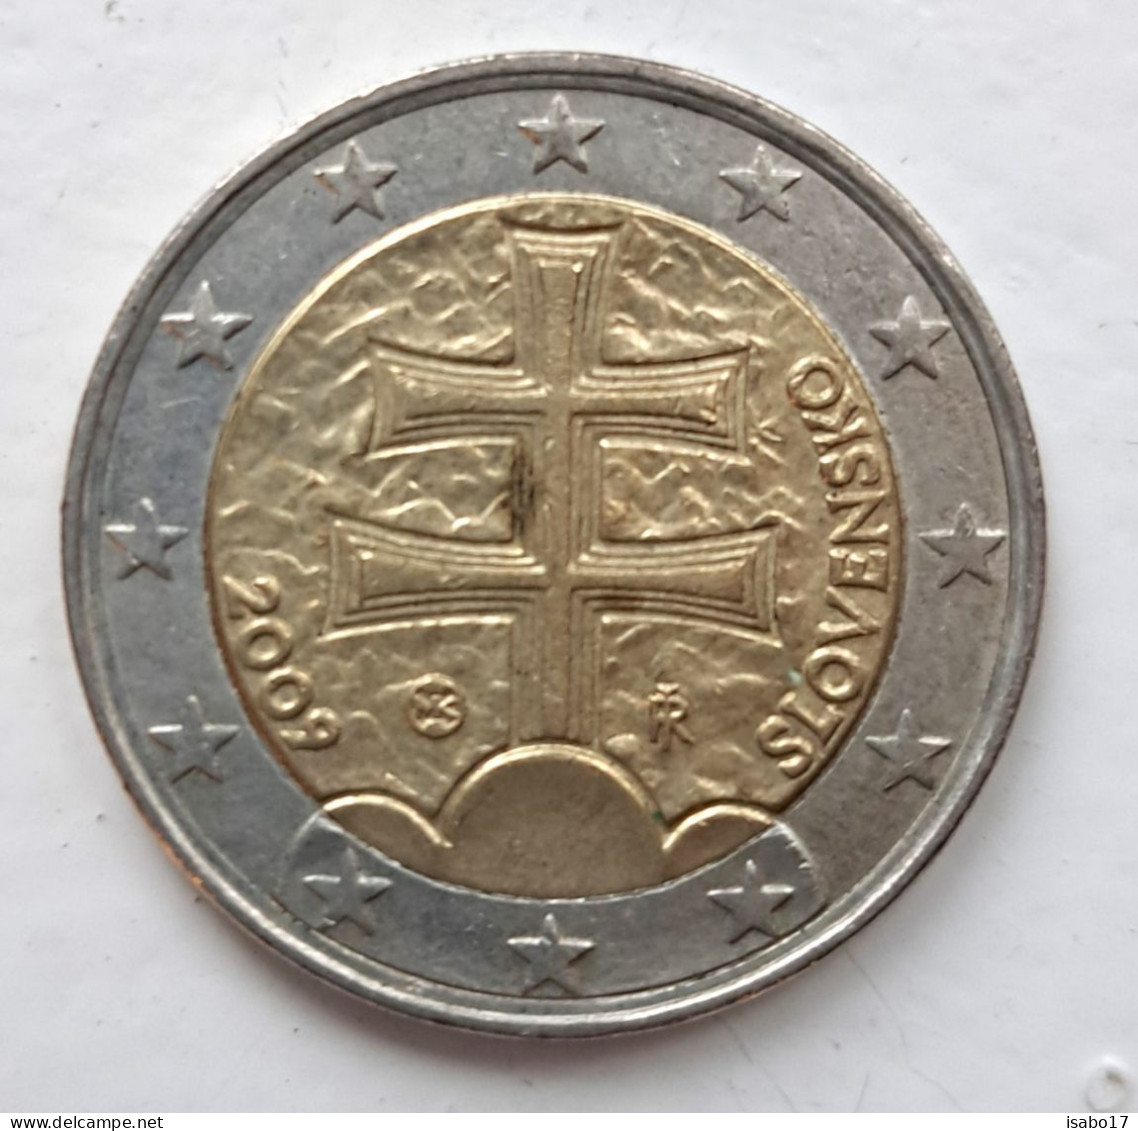 Slowenien 2 Euro Münze 2009 - Slowenien